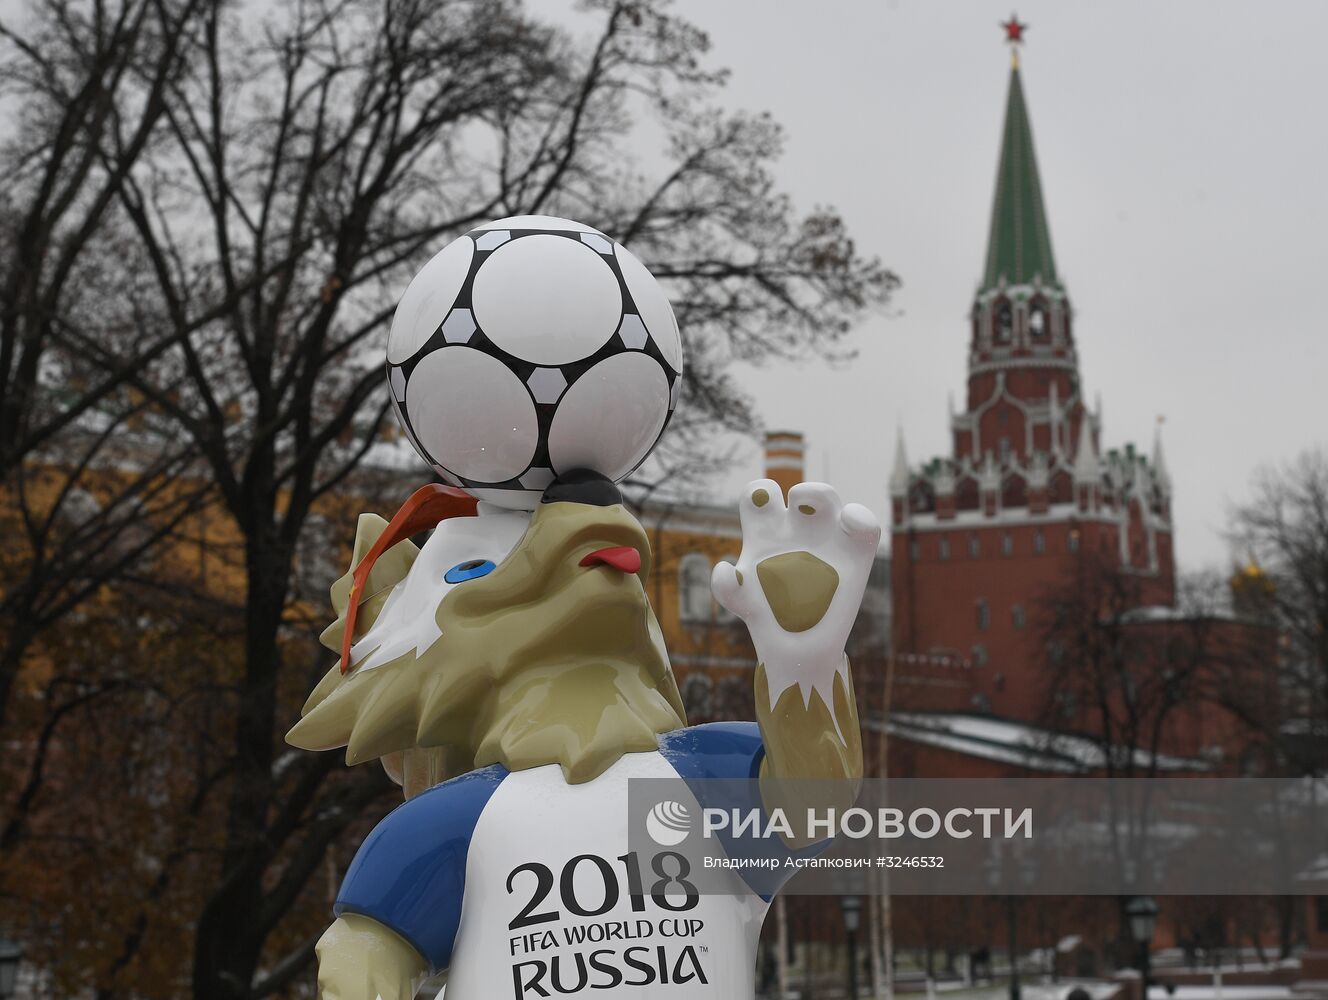 Арт-объекты установили перед финальной жеребьевкой чемпионата мира по футболу